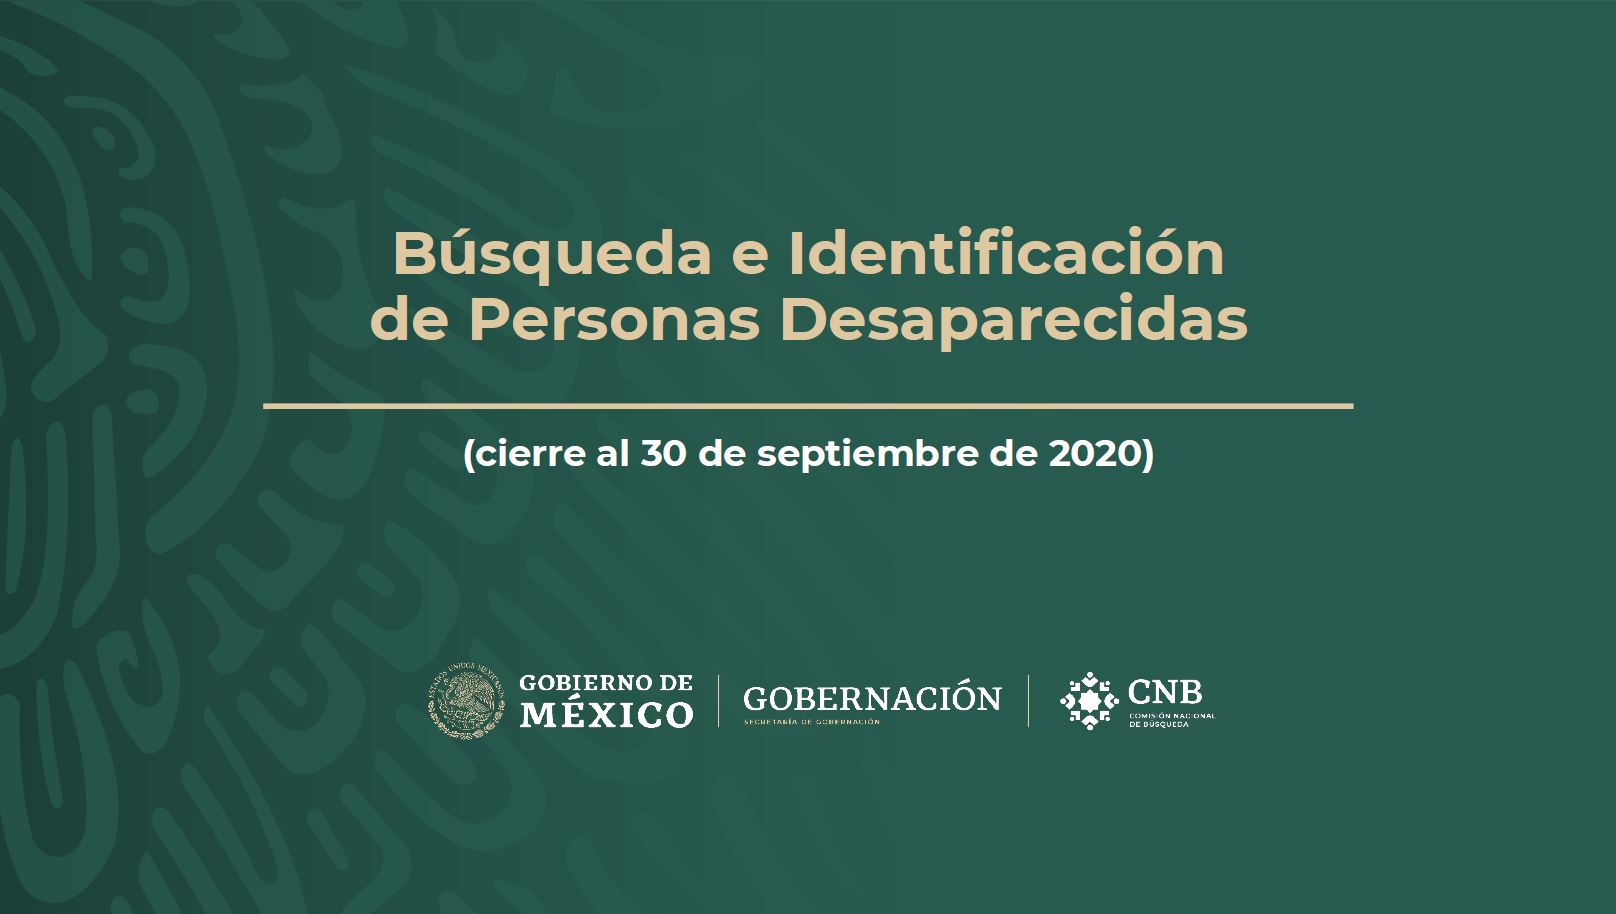 Informe sobre búsqueda e identificación de personas desaparecidas en el país, octubre 2020.